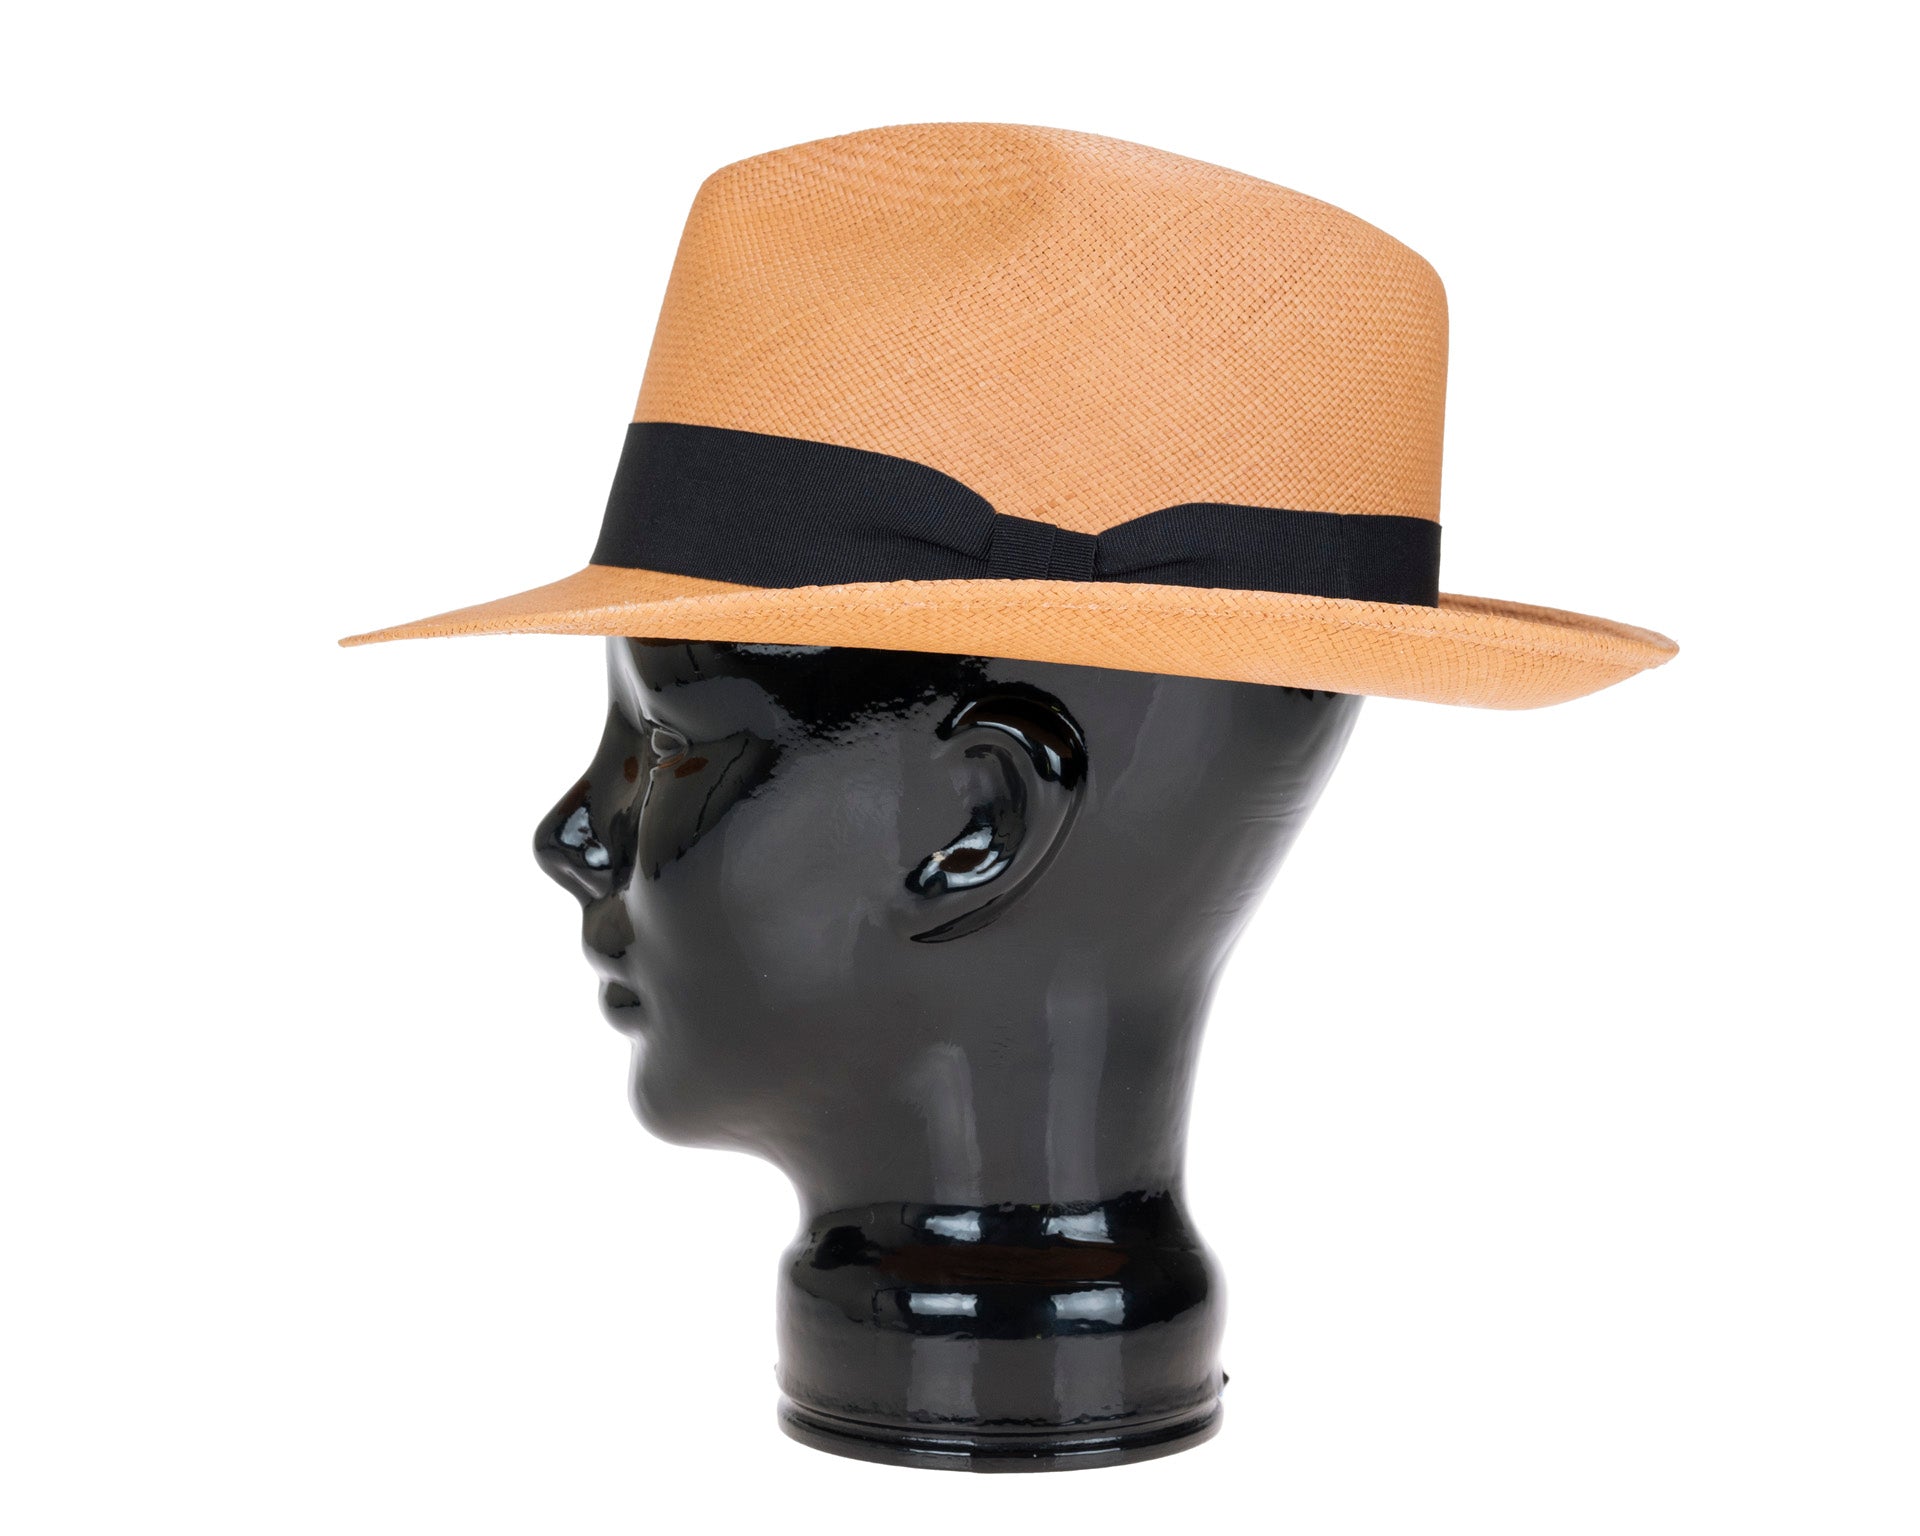 Advertentie suspensie circulatie Genuine Panama Straw Hat | Teddy King Brisa | Putty - The Hattery